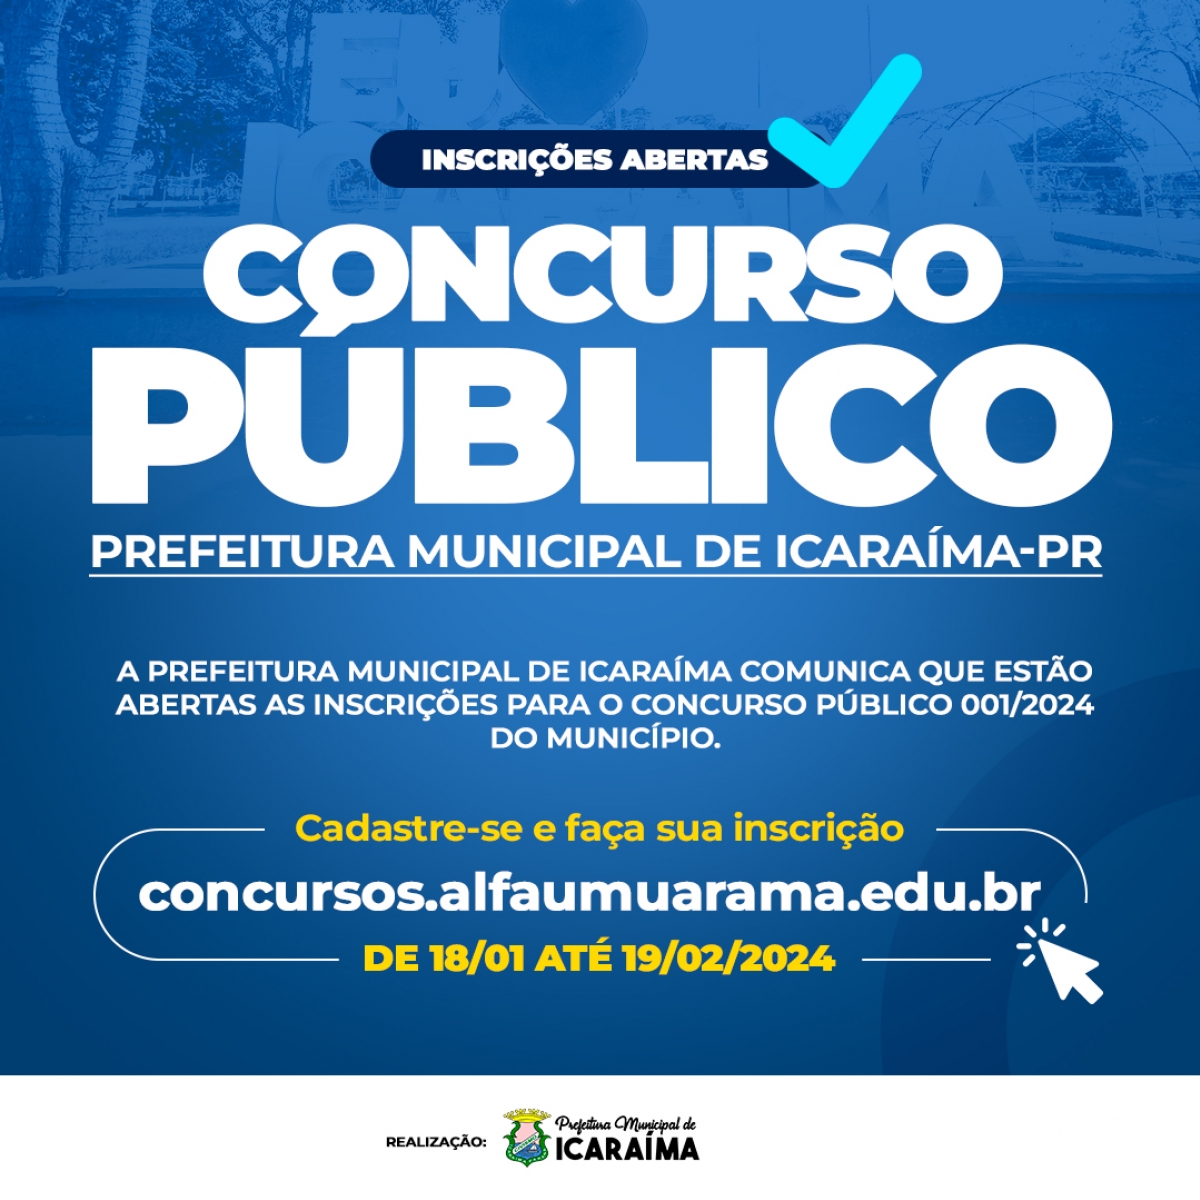 CONCURSO PÚBLICO 001/2024 - PREFEITURA MUNICIPAL DE ICARAÍMA